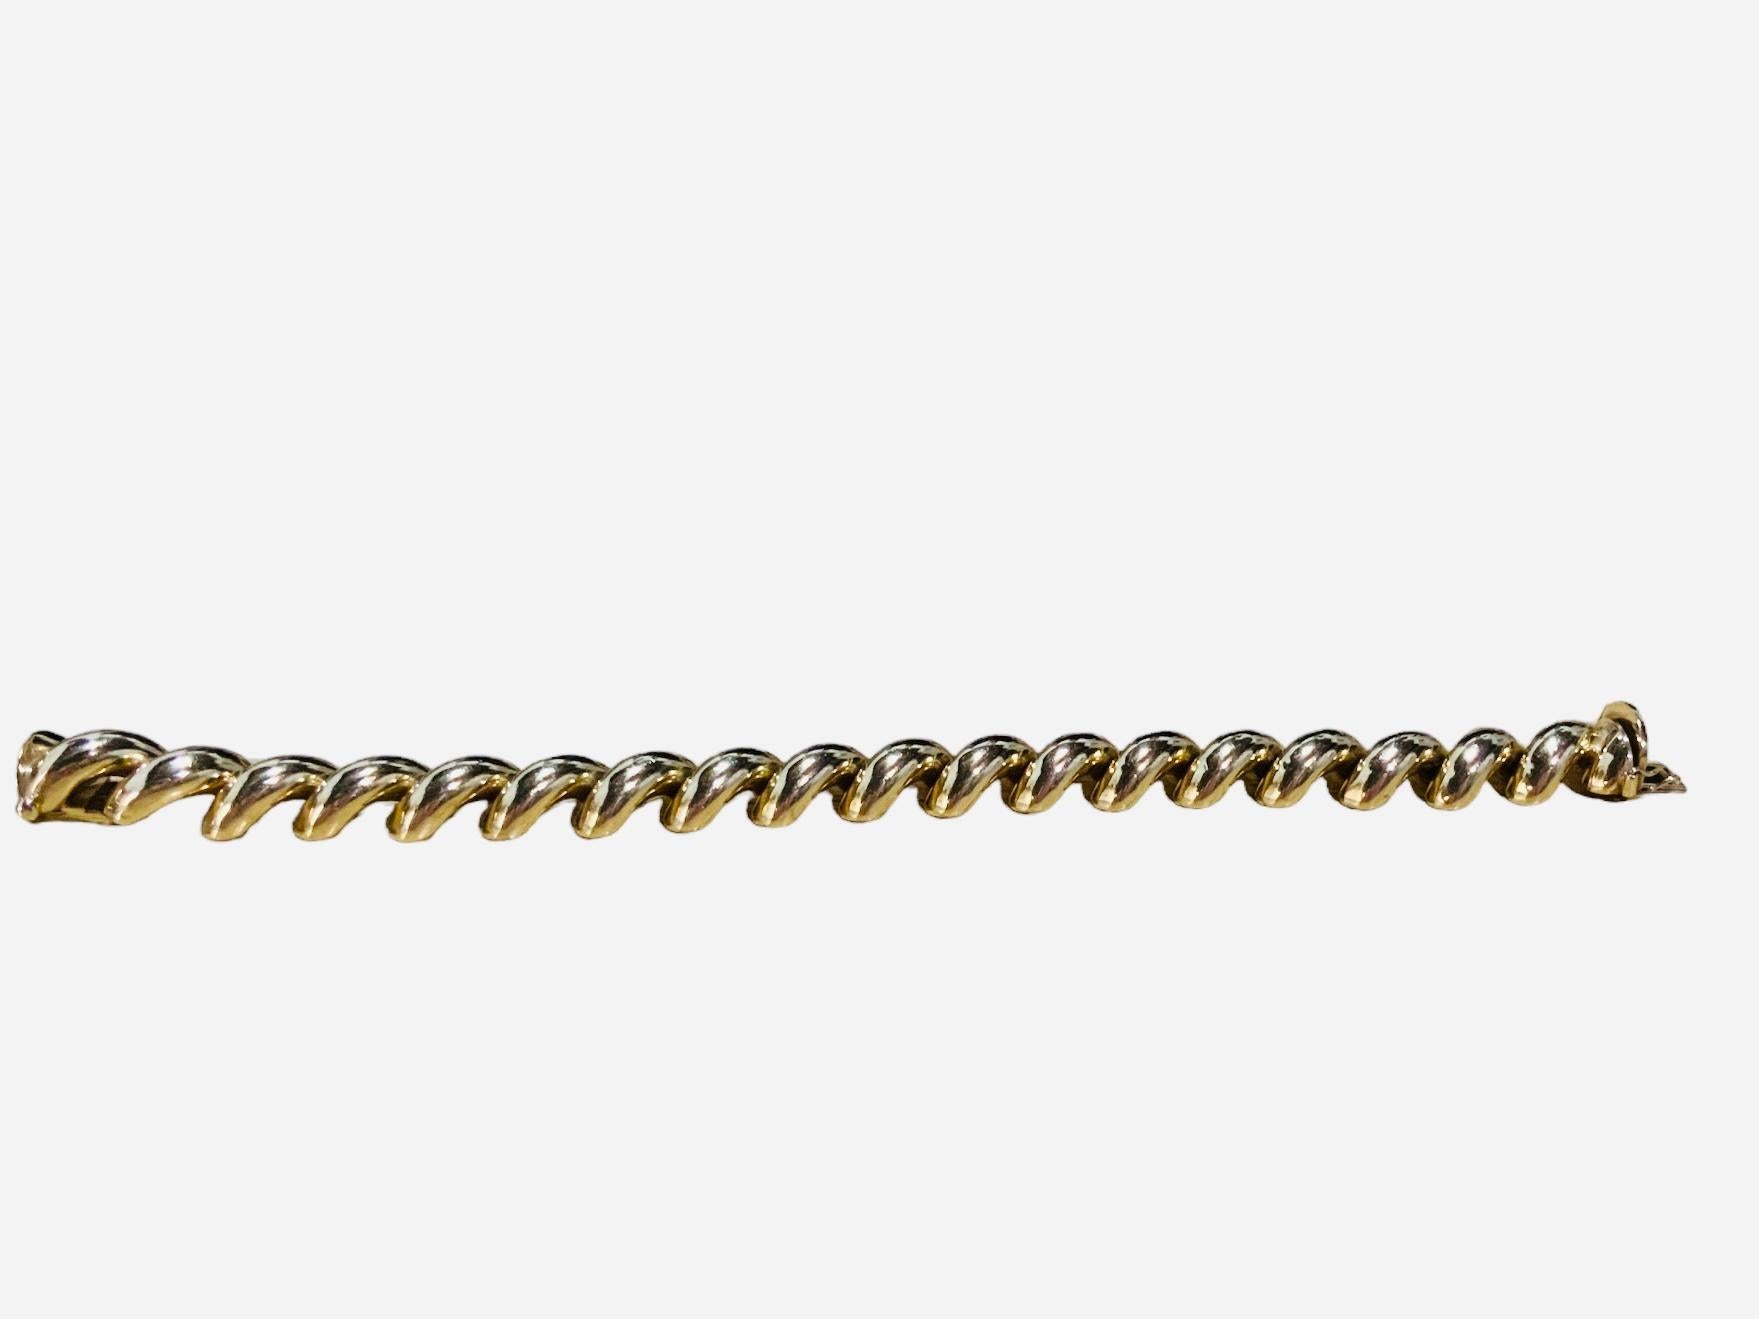 Dies ist eine italienische 14K Gelbgold Armband. Es ist ein San Marco/Macaroni Gliederarmband von 7,75 Zoll lang. Sein Gewicht beträgt 28,0 Gramm. Er hat einen versteckten Kastenverschluss, der eine Achtsicherung enthält. Das Armband ist gestempelt